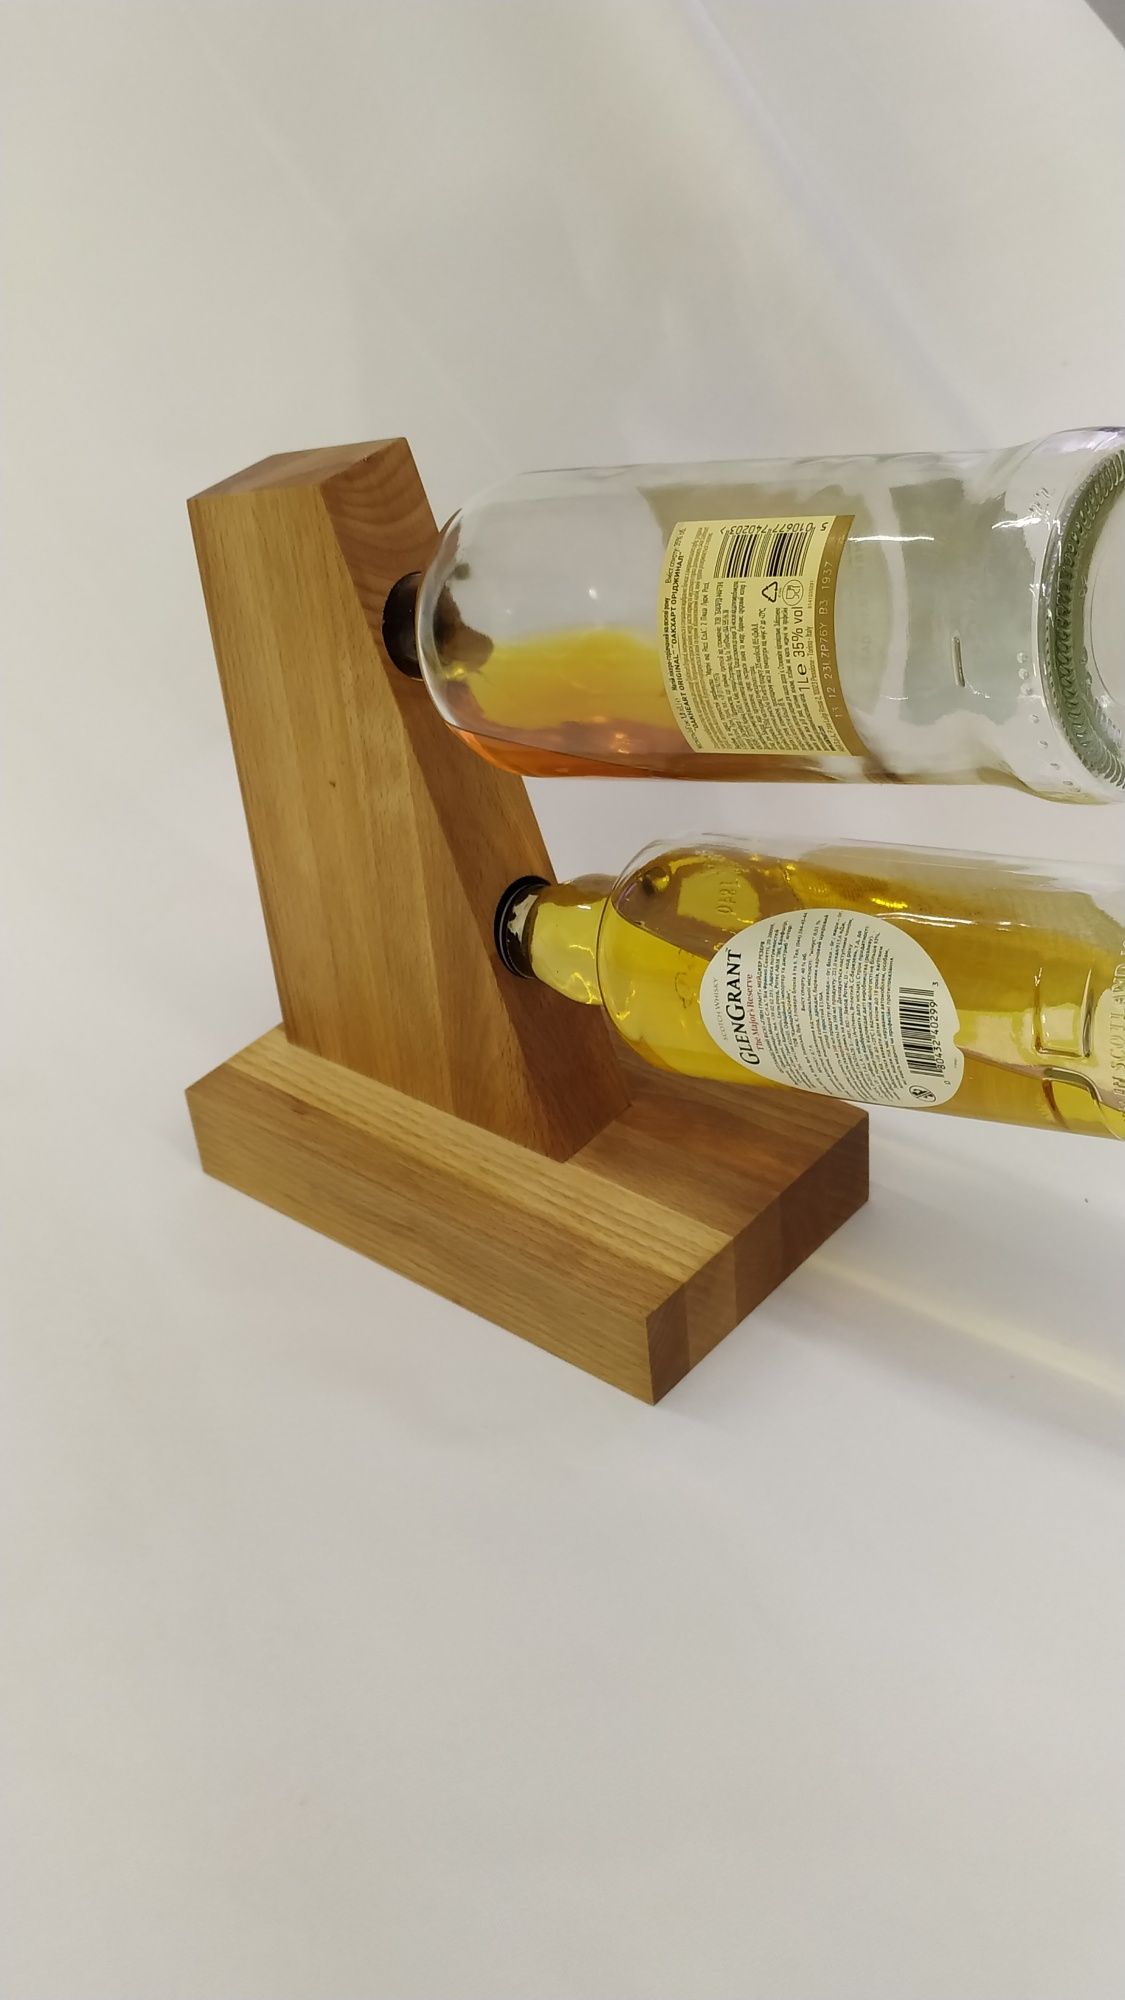 Стильна дерев'яна підставка,тримач для бутилок, пляшок для вашого дому